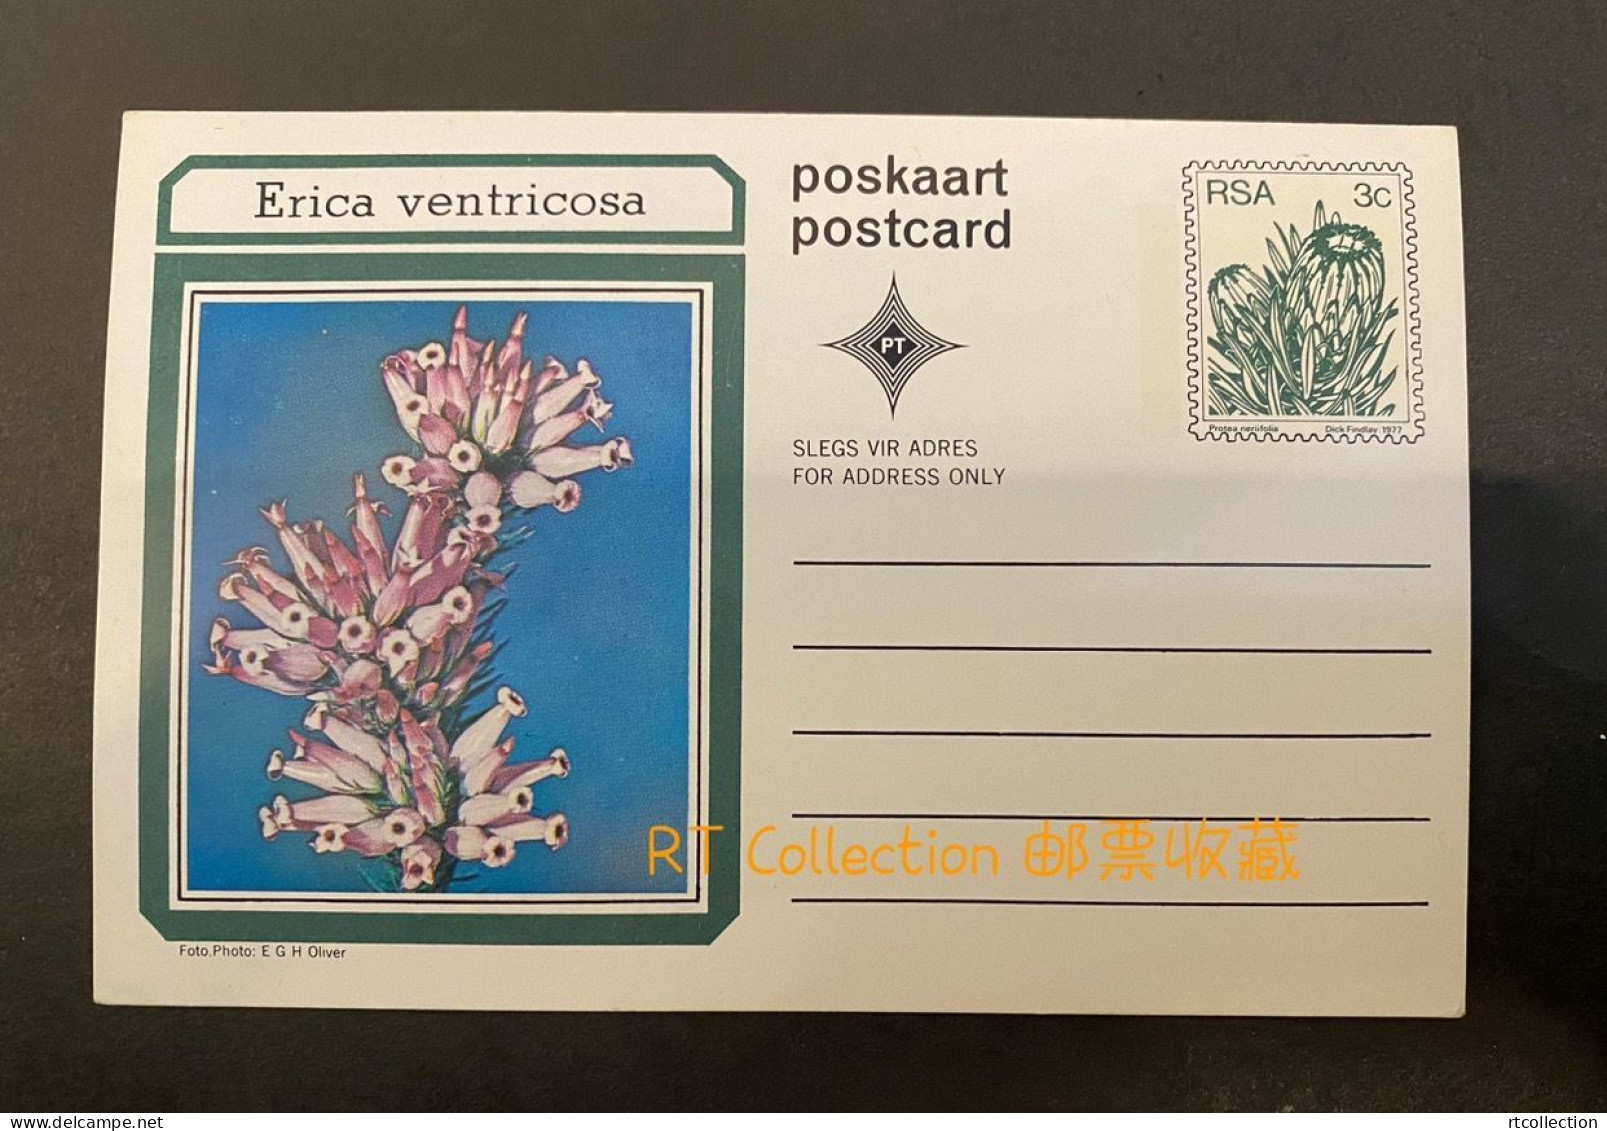 South Africa - Postcards Flora Protea Plants Nature Plant Florwers Protea Neriifolia Flower Postcard Post Card (2) - Afrique Du Sud